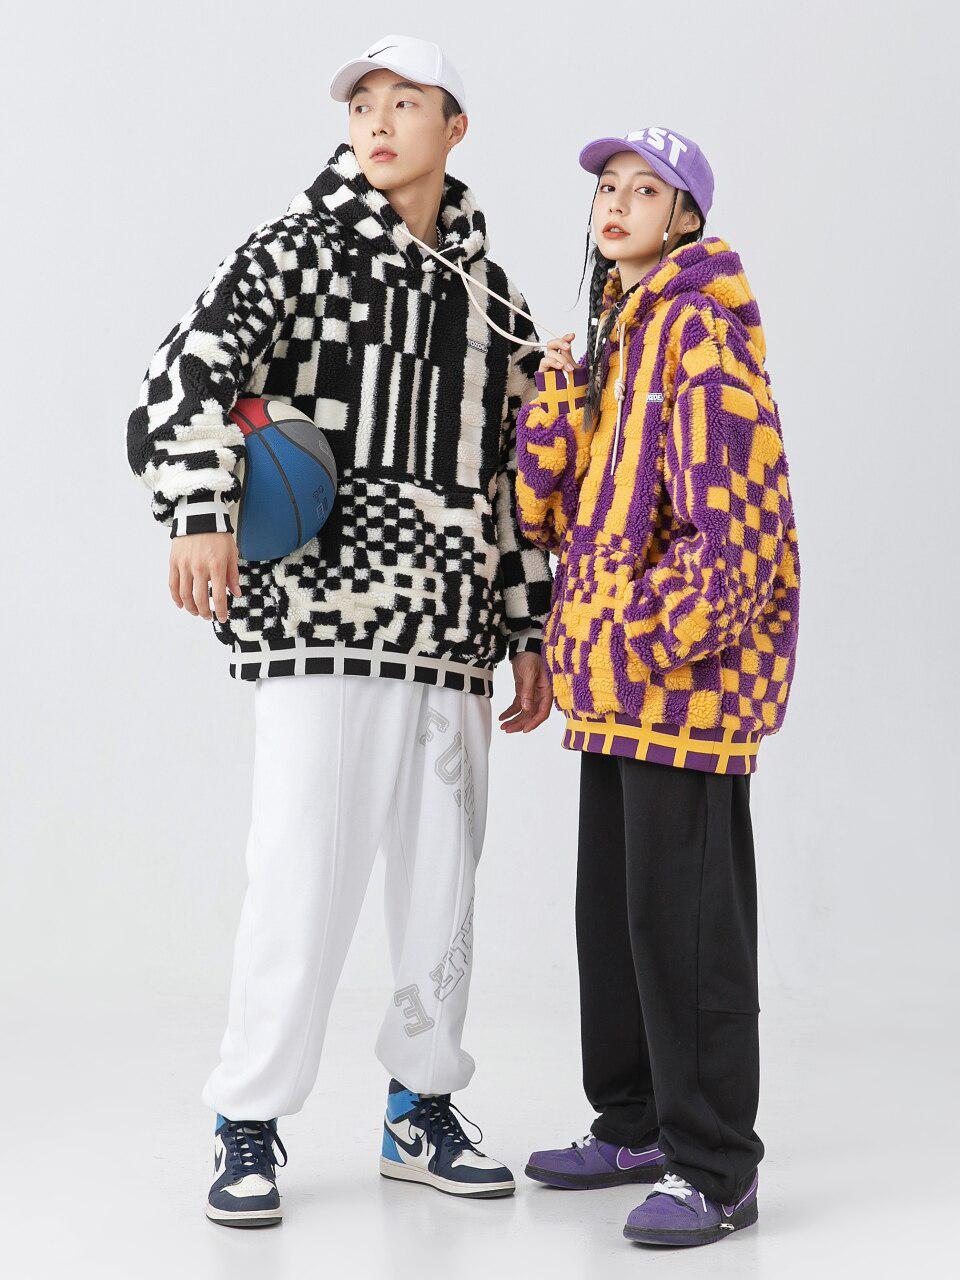 ein Mann und eine Frau, die übergroße Plüsch-Kapuzenpullis tragen; Der Kapuzenpullover für Männer ist schwarz und weiß, während der Kapuzenpullover für Frauen lila und orange ist